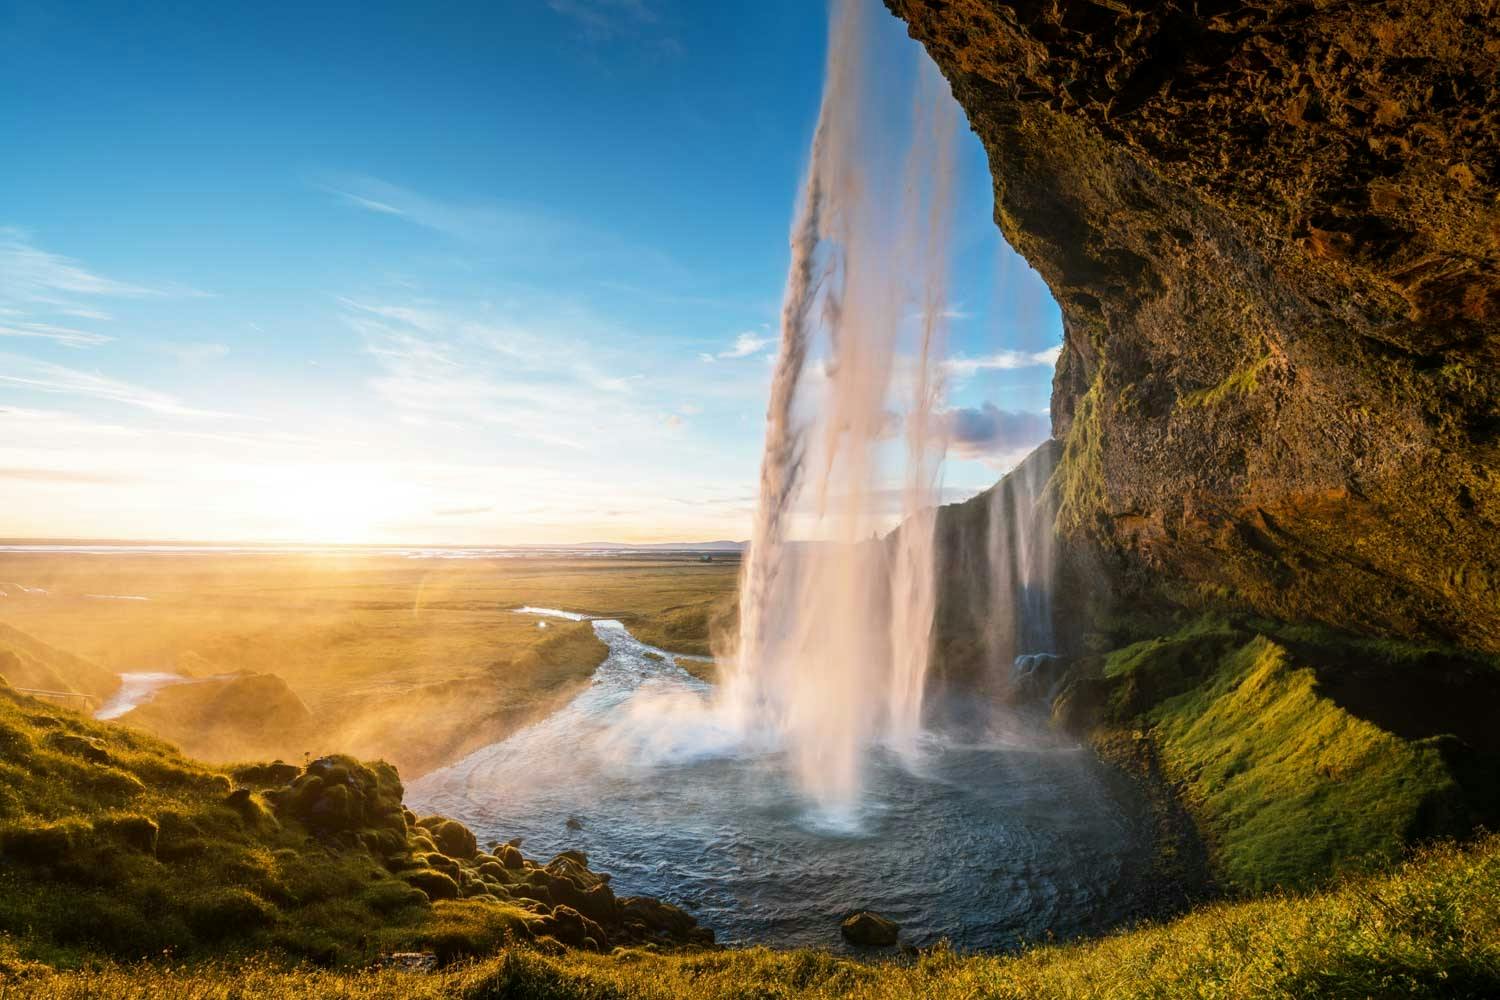 Sensational Iceland full-day tour